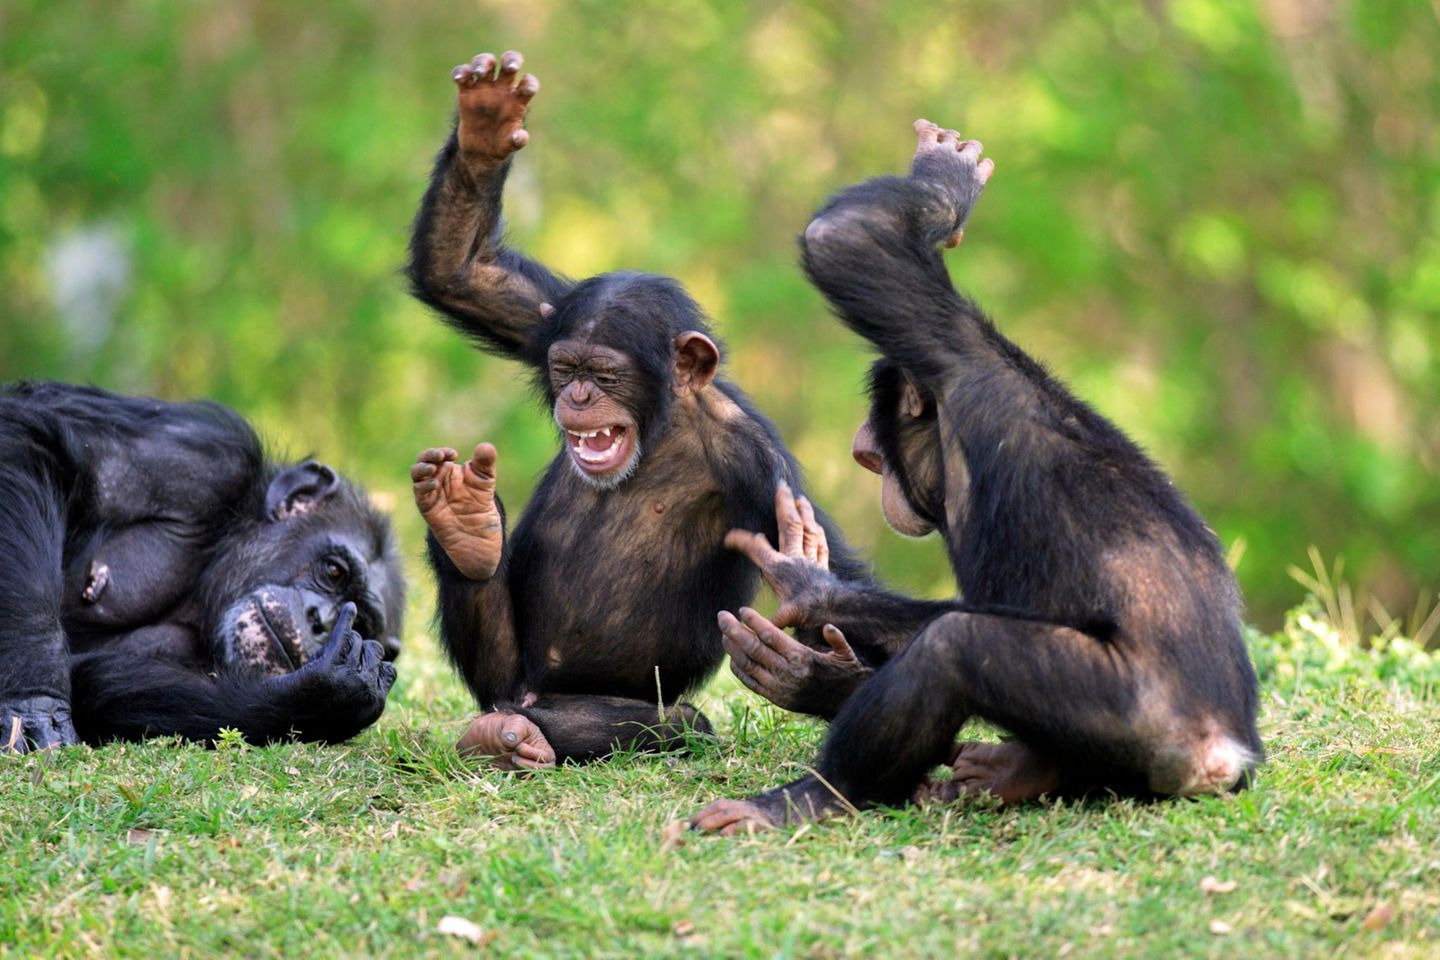 Auch Schimpansen können rhythmischen Klängen kaum widerstehen. In einer Studie ließen Wissenschaftler von der Kyoto-Universität in Japan die Schimpansen Musikausschnitte hören und beobachteten, wie sie sich im Rhythmus dazu bewegten. Mit Elan und Taktgefühl schwangen die Menschenaffen ihre Oberkörper vor und zurück - und gaben dabei Geräusche von sich.